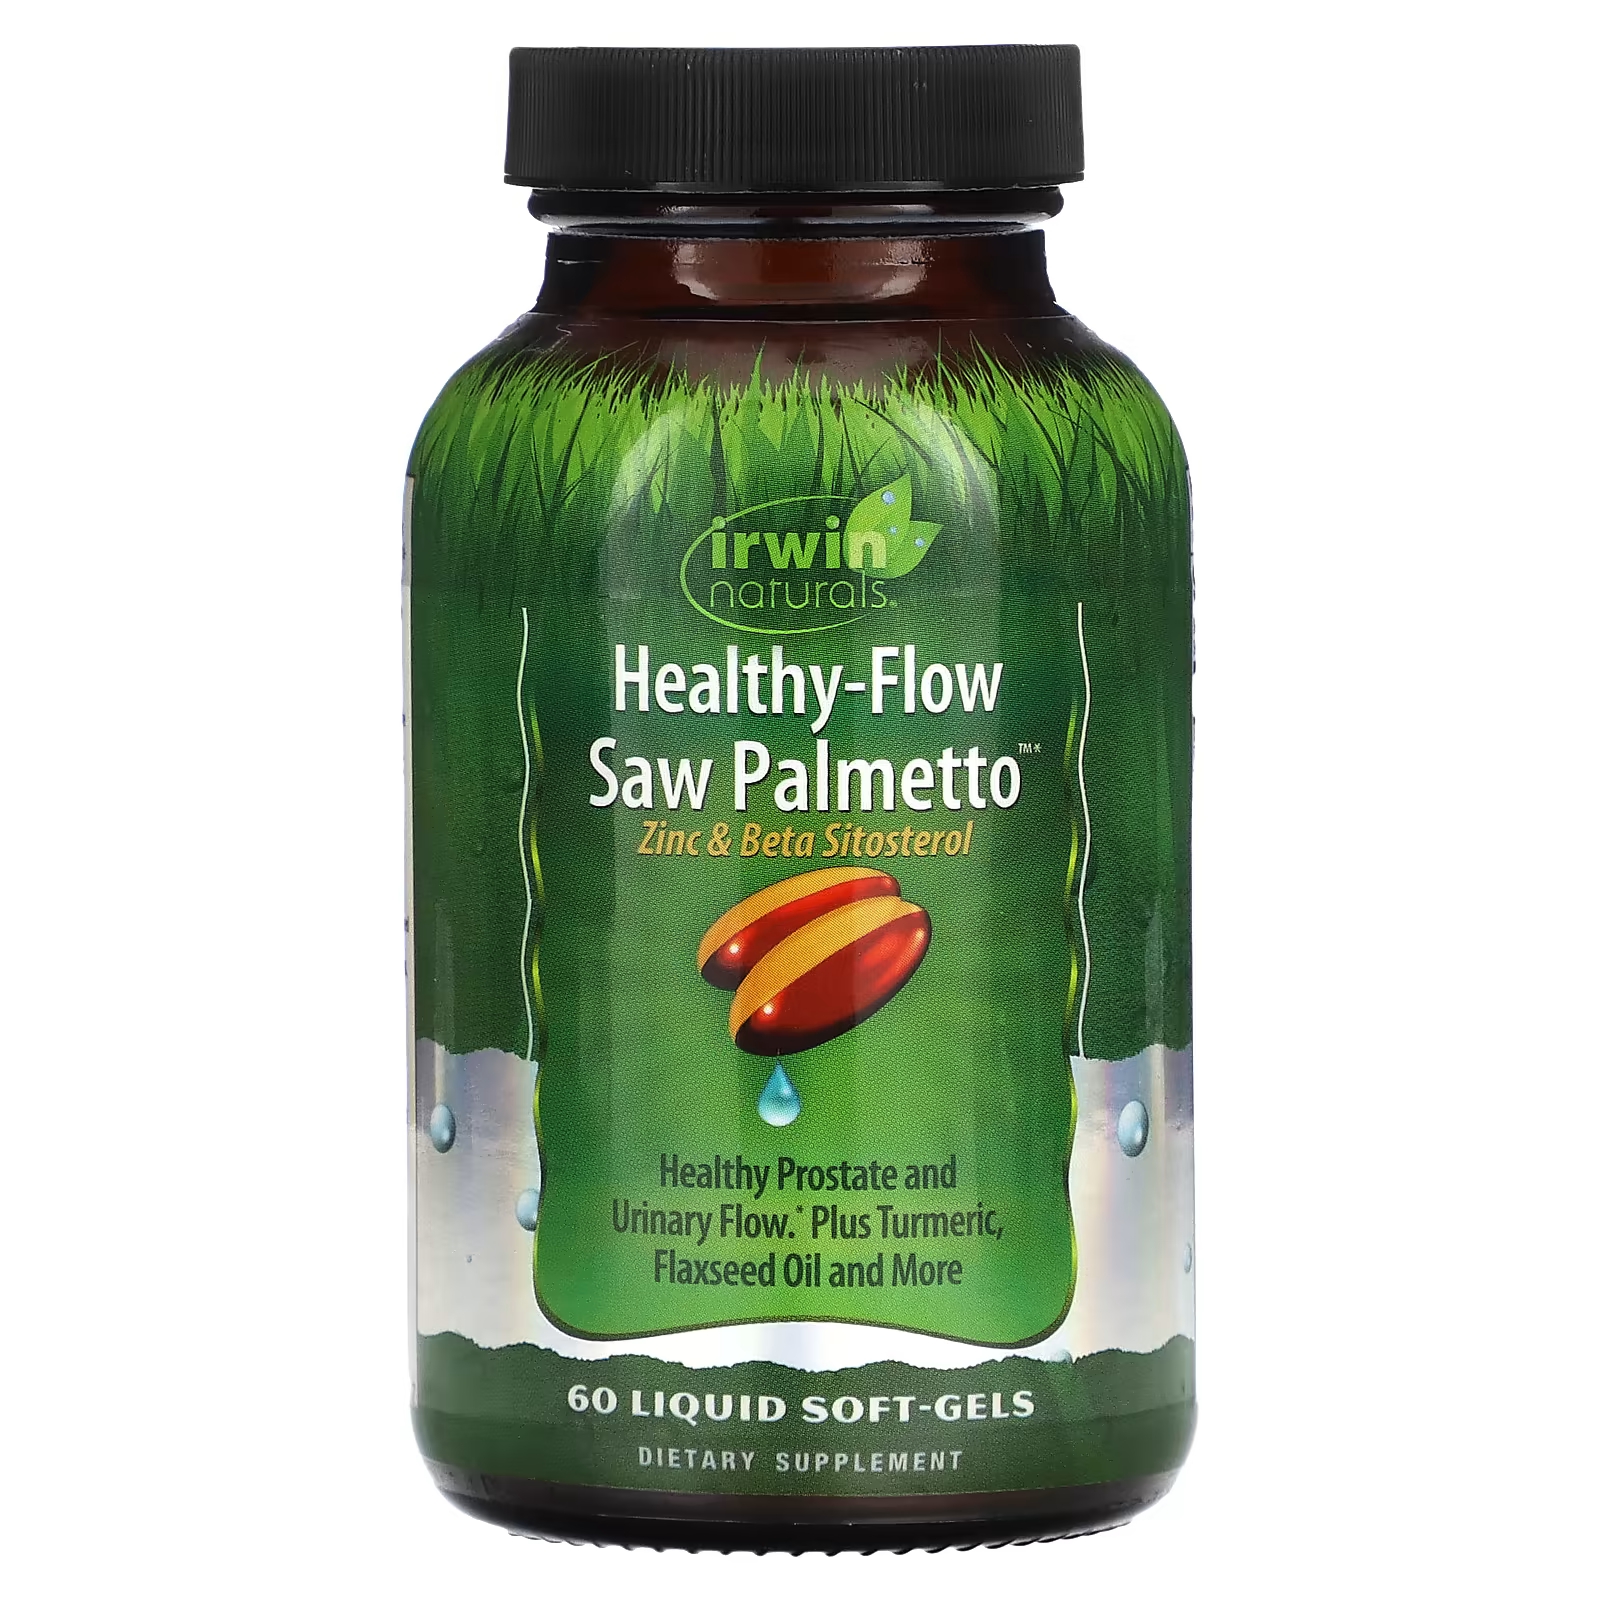 Пищевая добавка Irwin Naturals Healthy-Flow Saw Palmetto, 60 жидких таблеток irwin naturals healthy flow saw palmetto 60 liquid soft gels